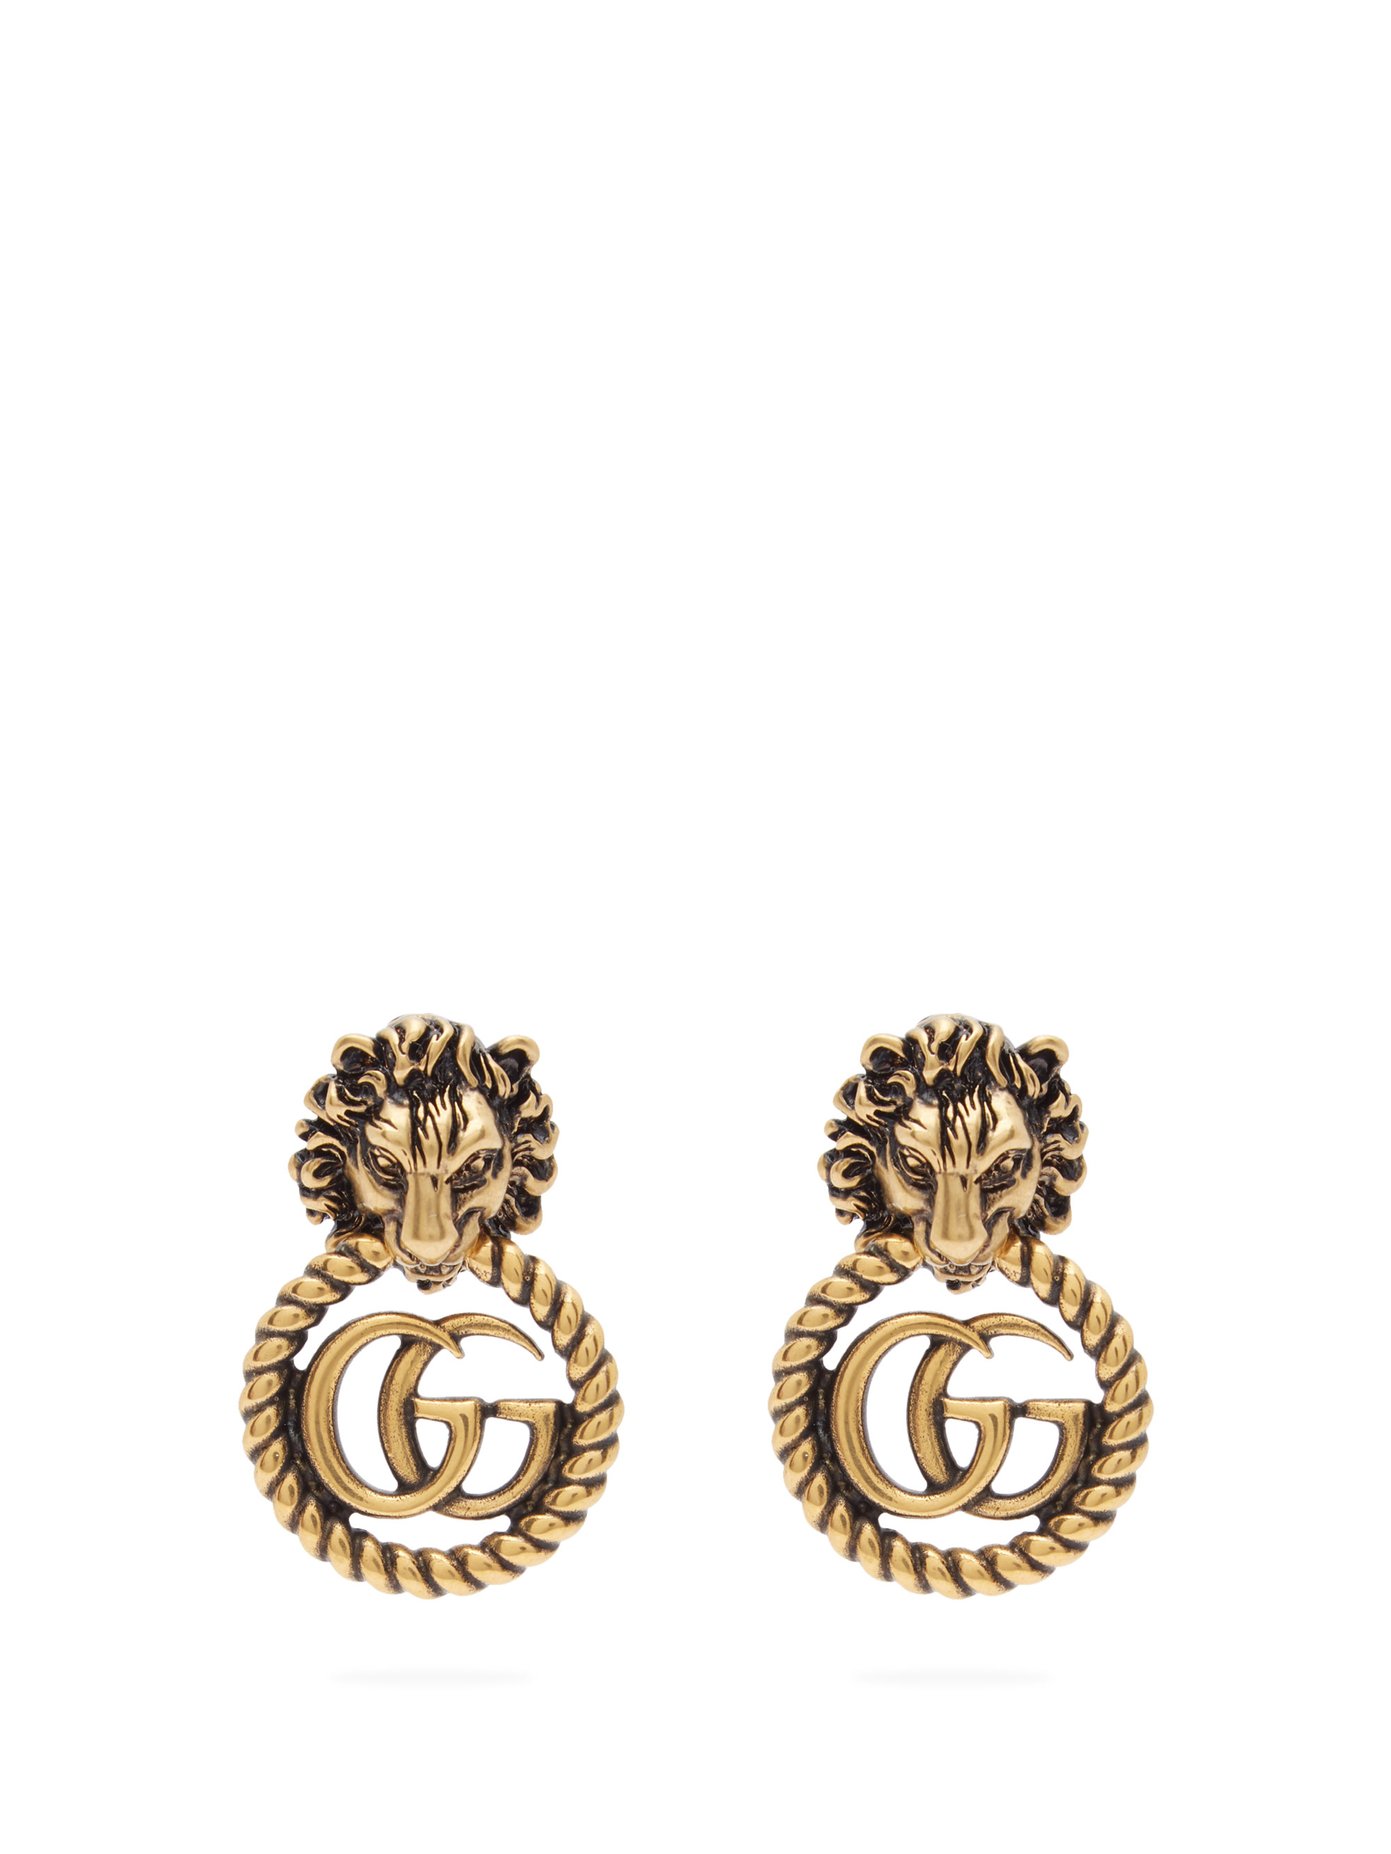 buy gucci earrings